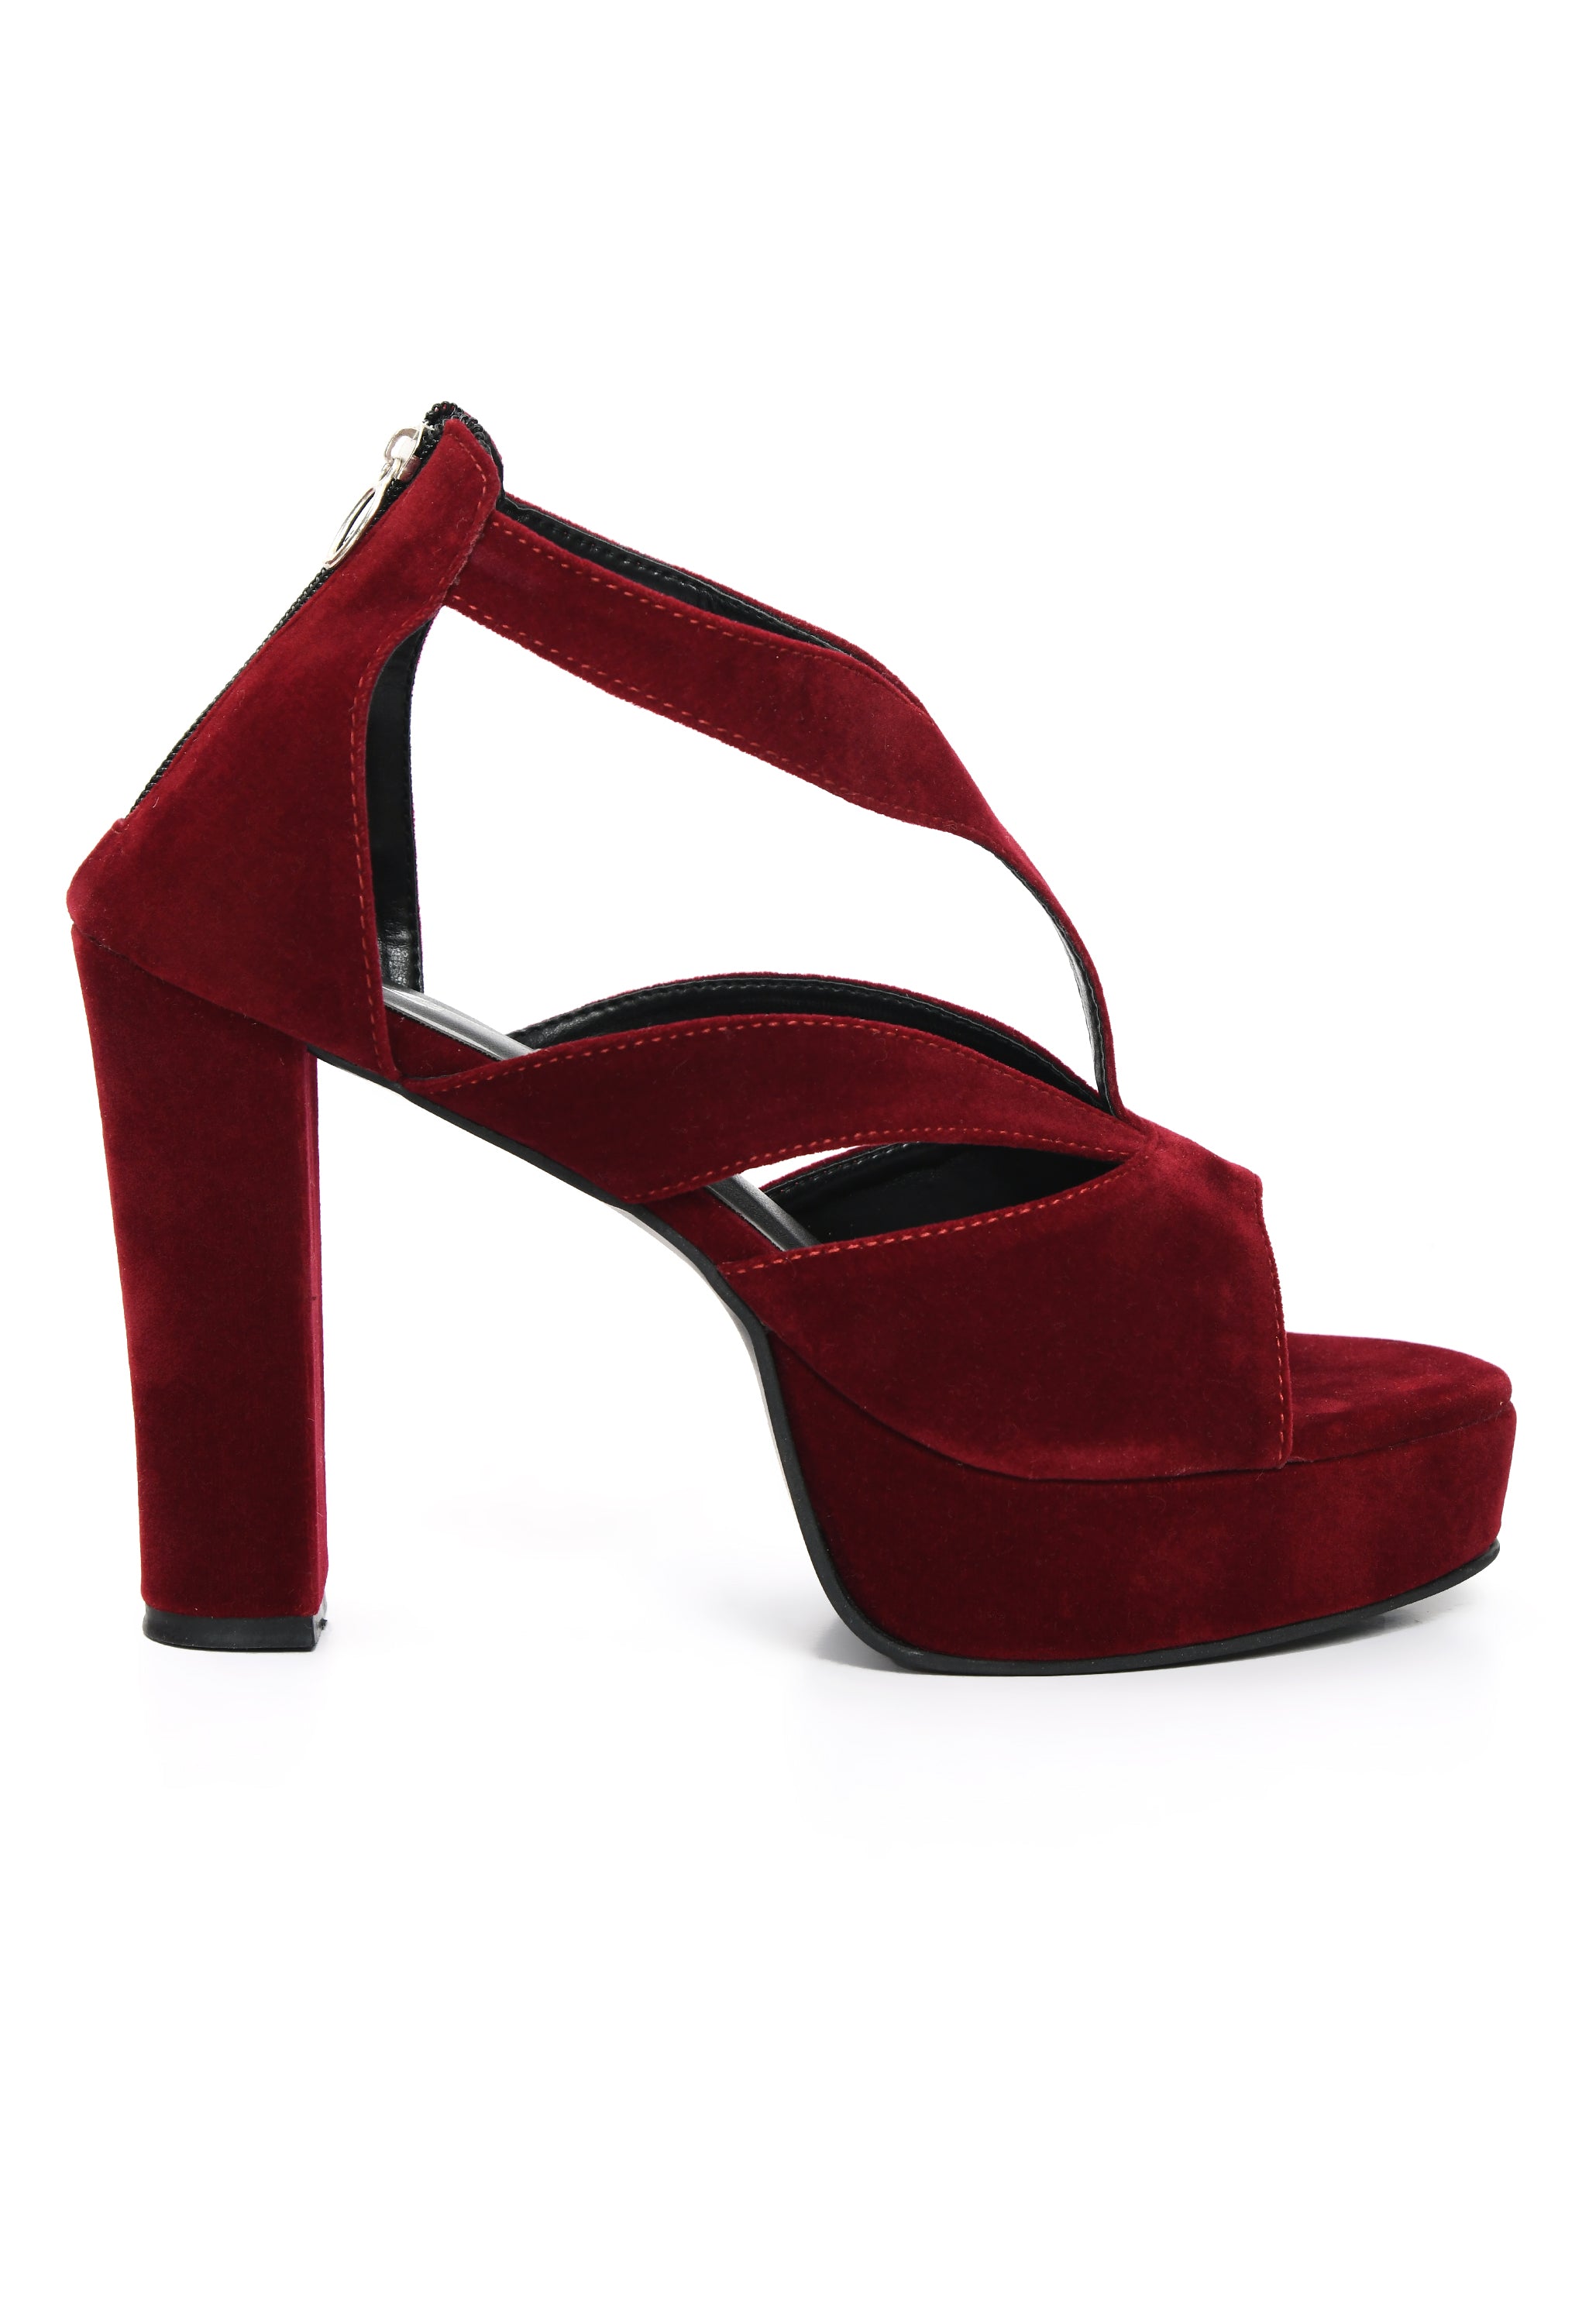 STYLZ Red Wine 5-inch Designer Strap Platform Block Heel